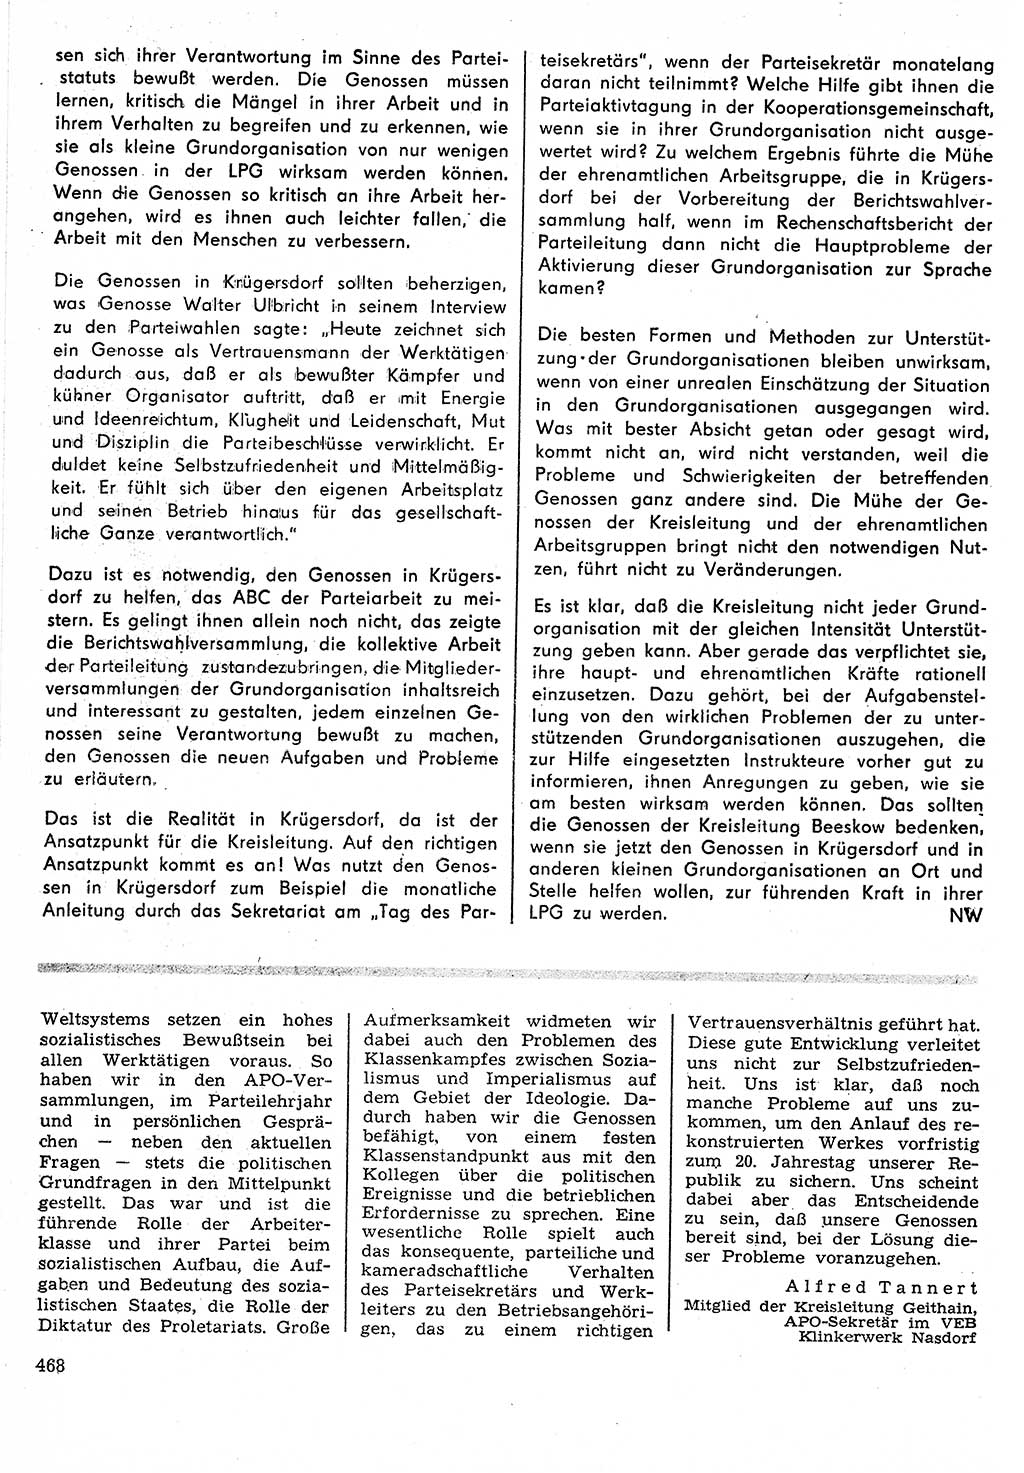 Neuer Weg (NW), Organ des Zentralkomitees (ZK) der SED (Sozialistische Einheitspartei Deutschlands) für Fragen des Parteilebens, 24. Jahrgang [Deutsche Demokratische Republik (DDR)] 1969, Seite 468 (NW ZK SED DDR 1969, S. 468)